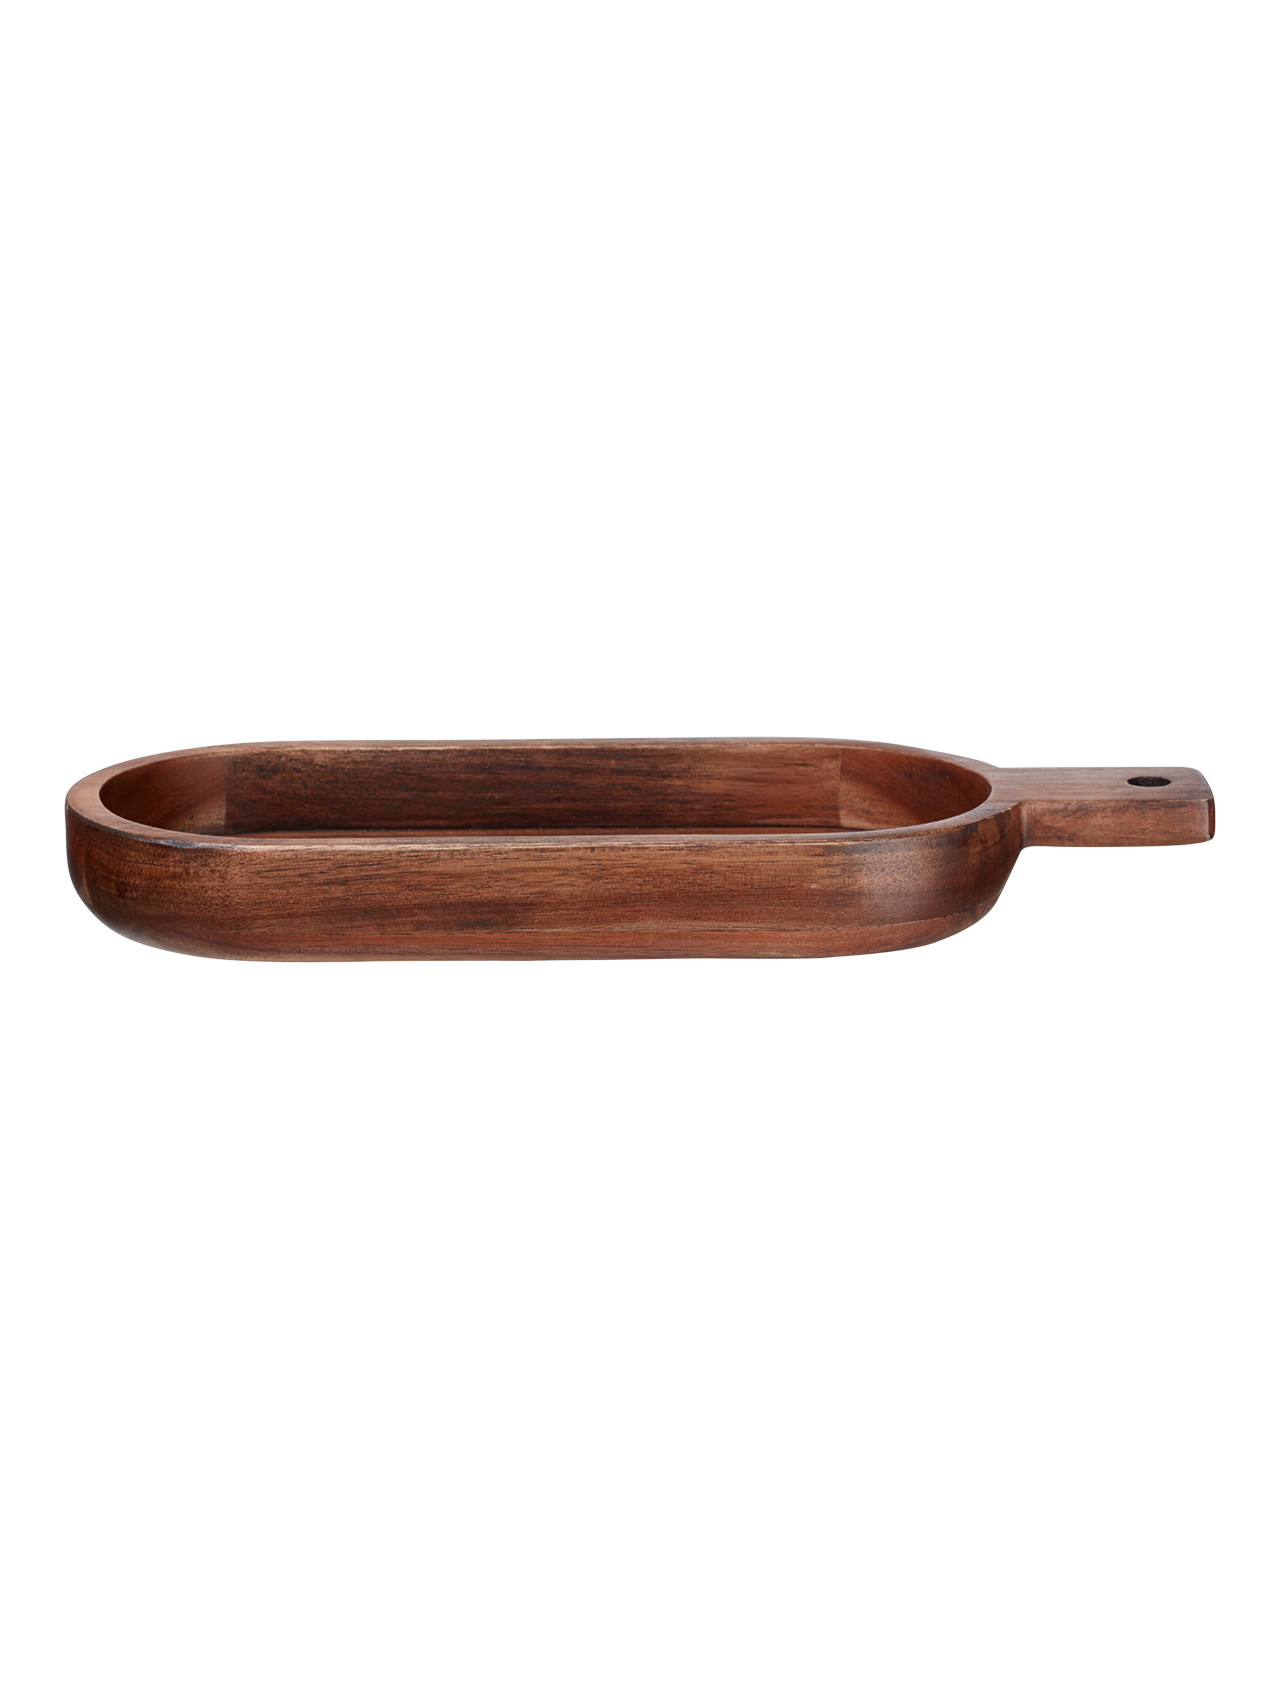 ASA wood ovale Schale flach mit Griff Akazie massiv braun 33,4 x 13 cm H. 3,5 cm